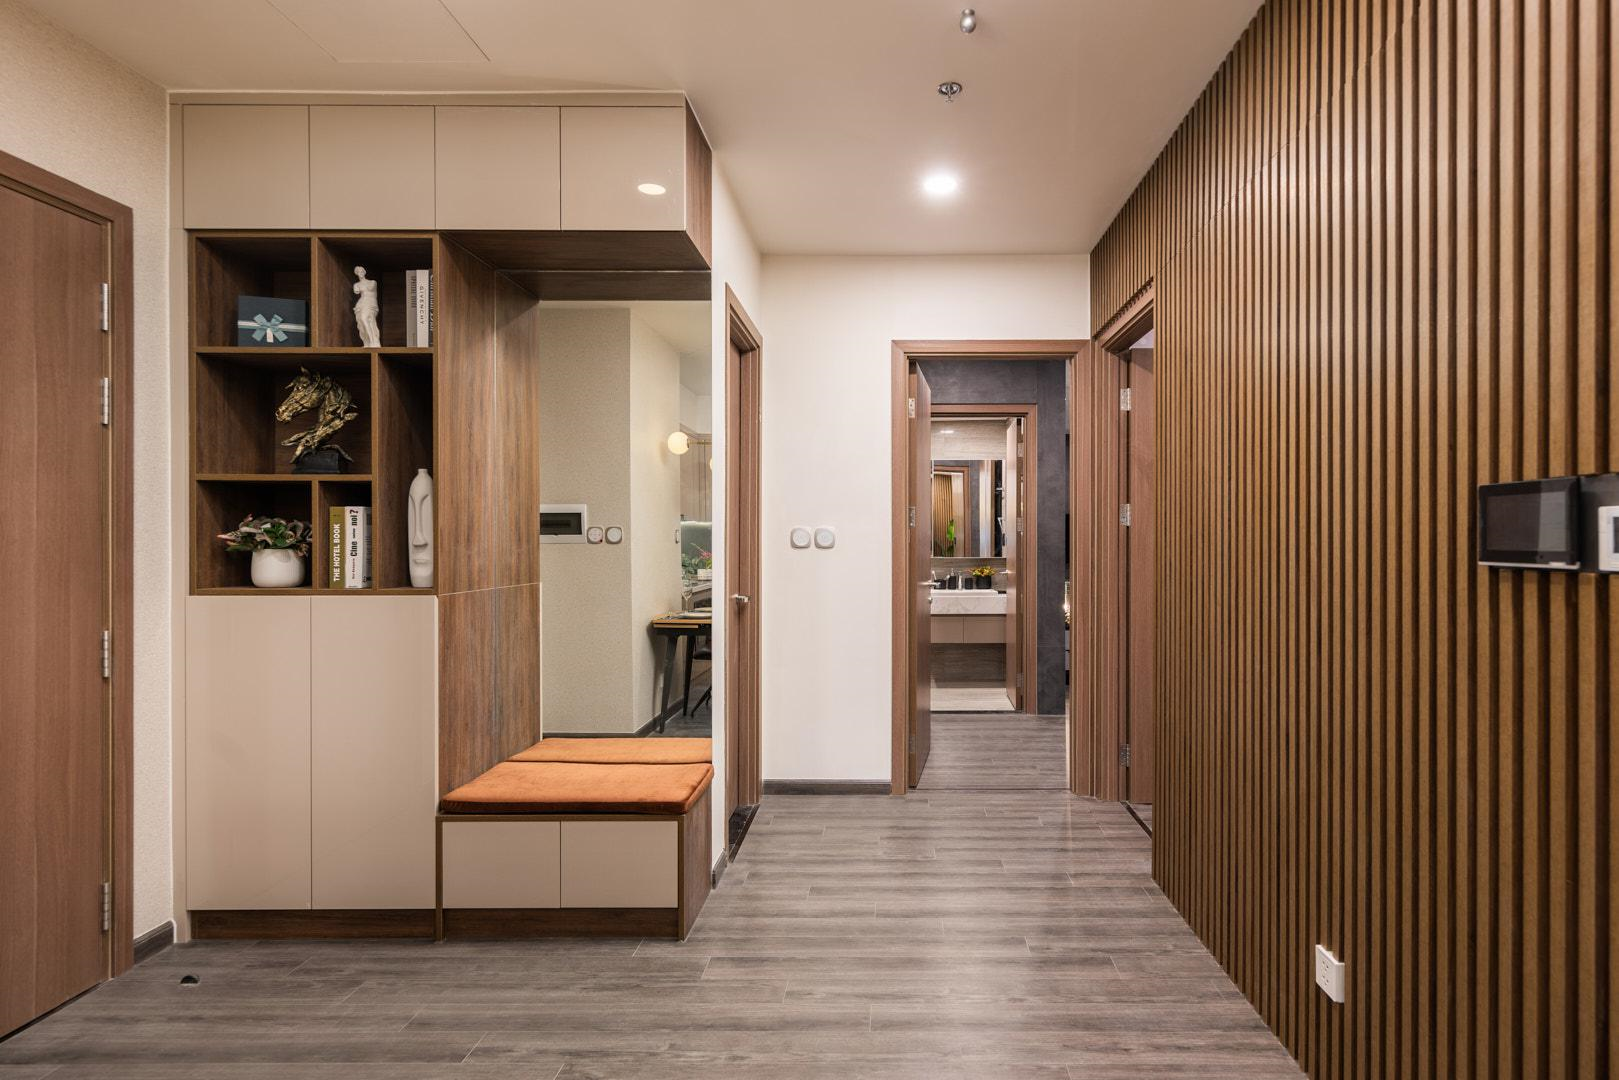 Các không gian trong căn hộ được thiết kế tối ưu hóa công năng